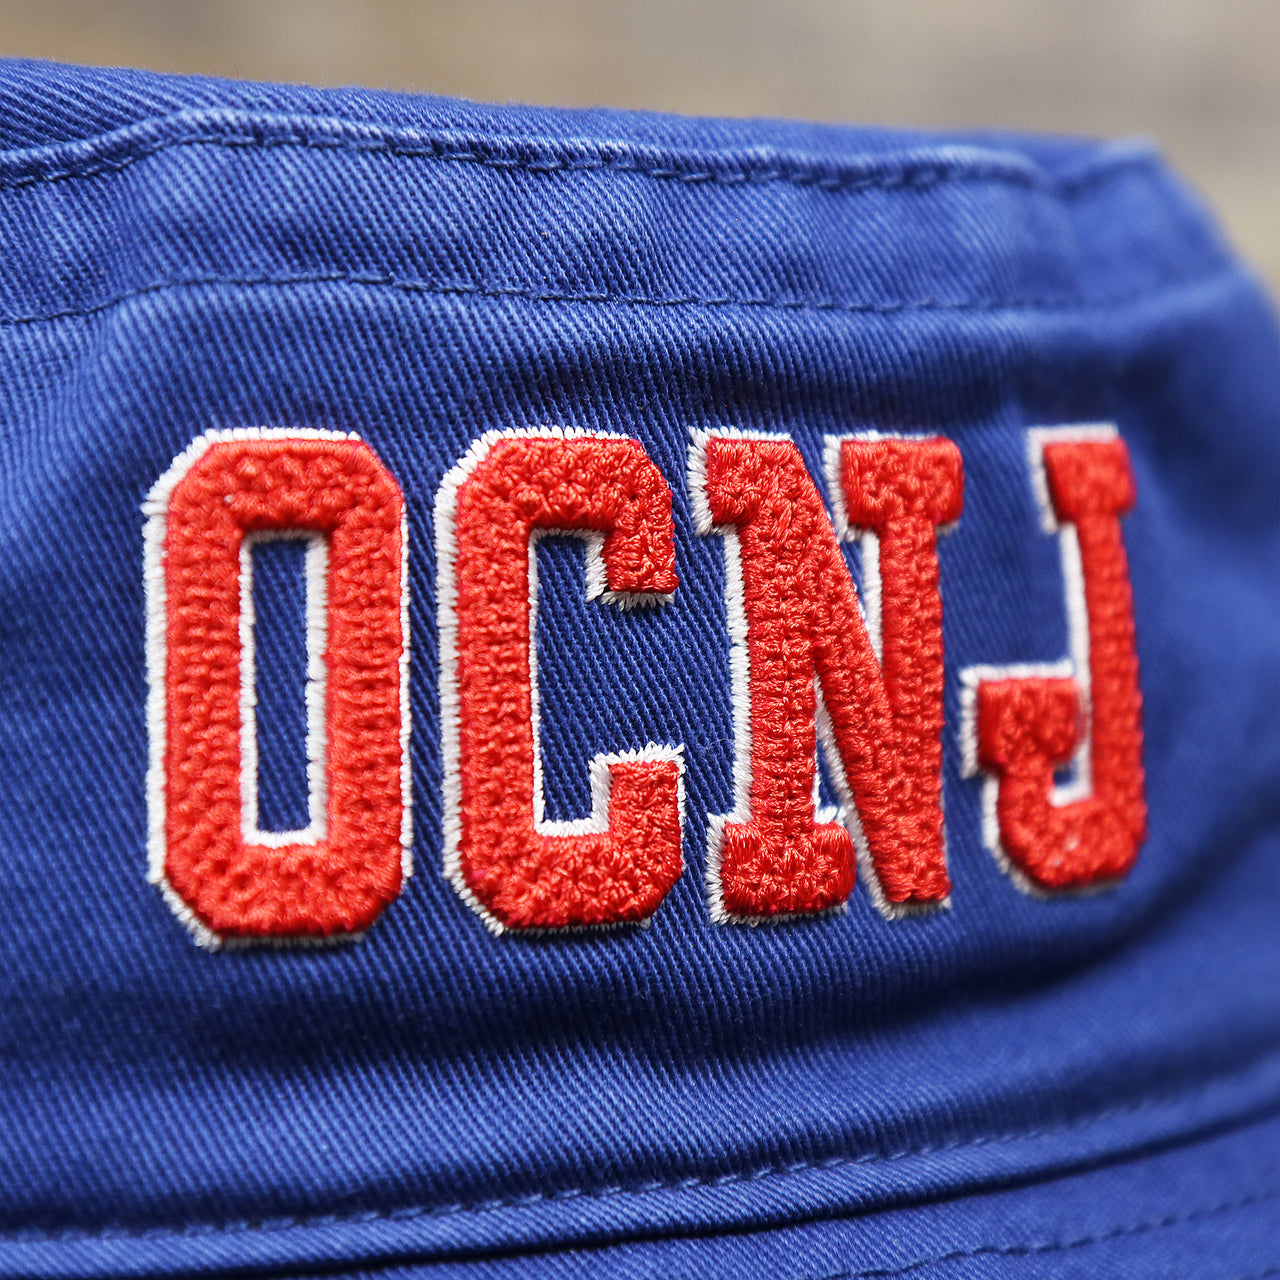 The OCNJ Wordmark on the Ocean City New Jersey OCNJ Wordmark Bucket Hat | Royal Blue Bucket Hat